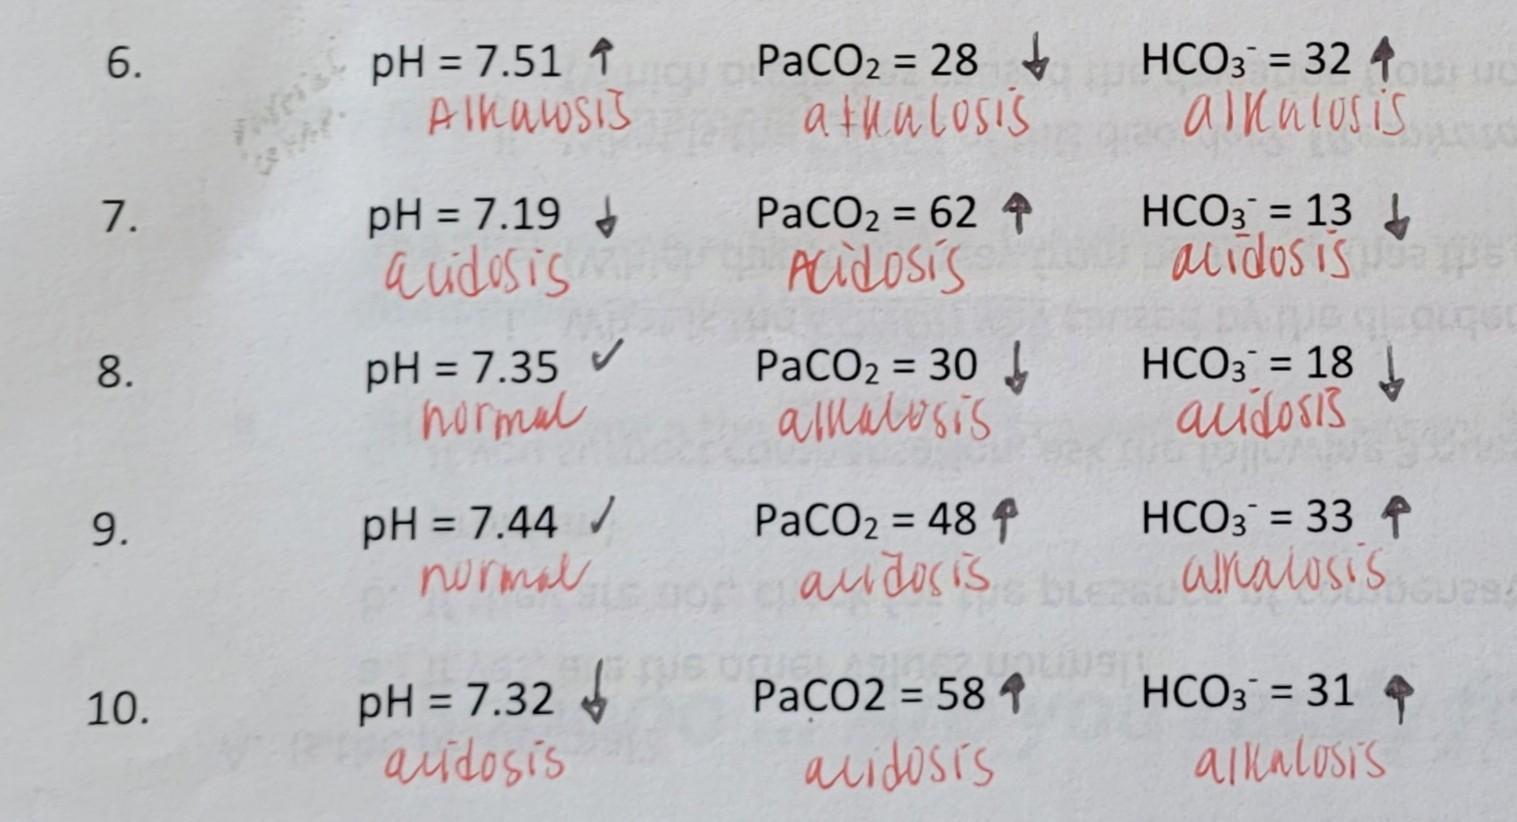 6 Hco3 324 Ph 7 51 1 Alhausis Paco2 28 Athalosis Ainulosis 7 Ph 7 19 Audosis Paco2 62 4 Acidosis Hco3 13 1